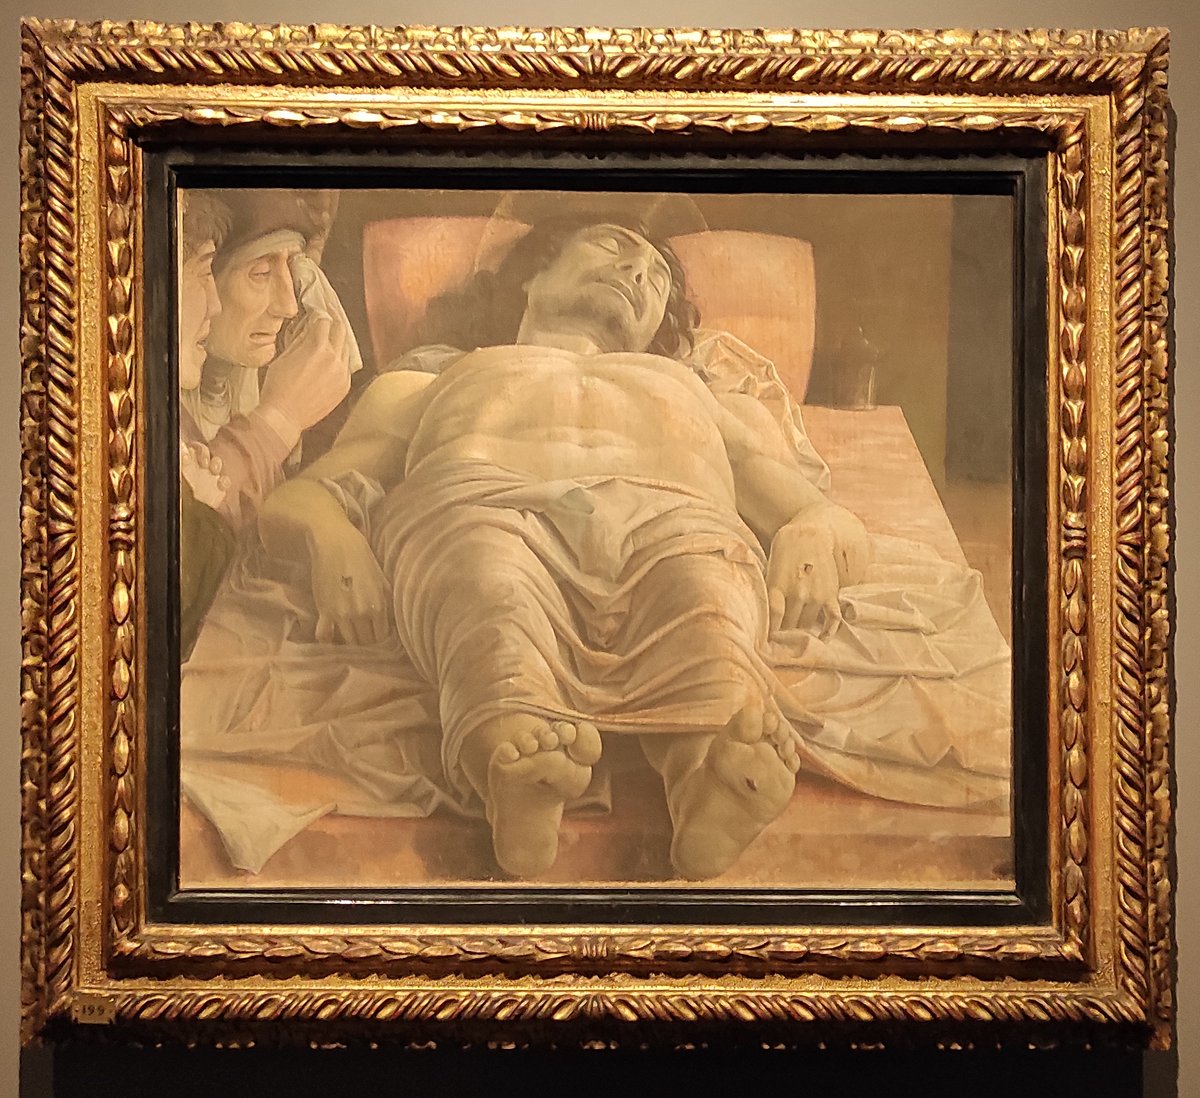 Andrea Mantegna
Cristo Morto [Dead Christ]
1483
Pinacoteca di Brera
Milan

#reallyseen #art #arte #artlover #artcollector #museitaliani #renaissance #rinascimento #artphoto #nft #artgallery #artoftheday #arthistory #mantegna #cristomorto #christ #andreamantegna #pinacotecadibrera